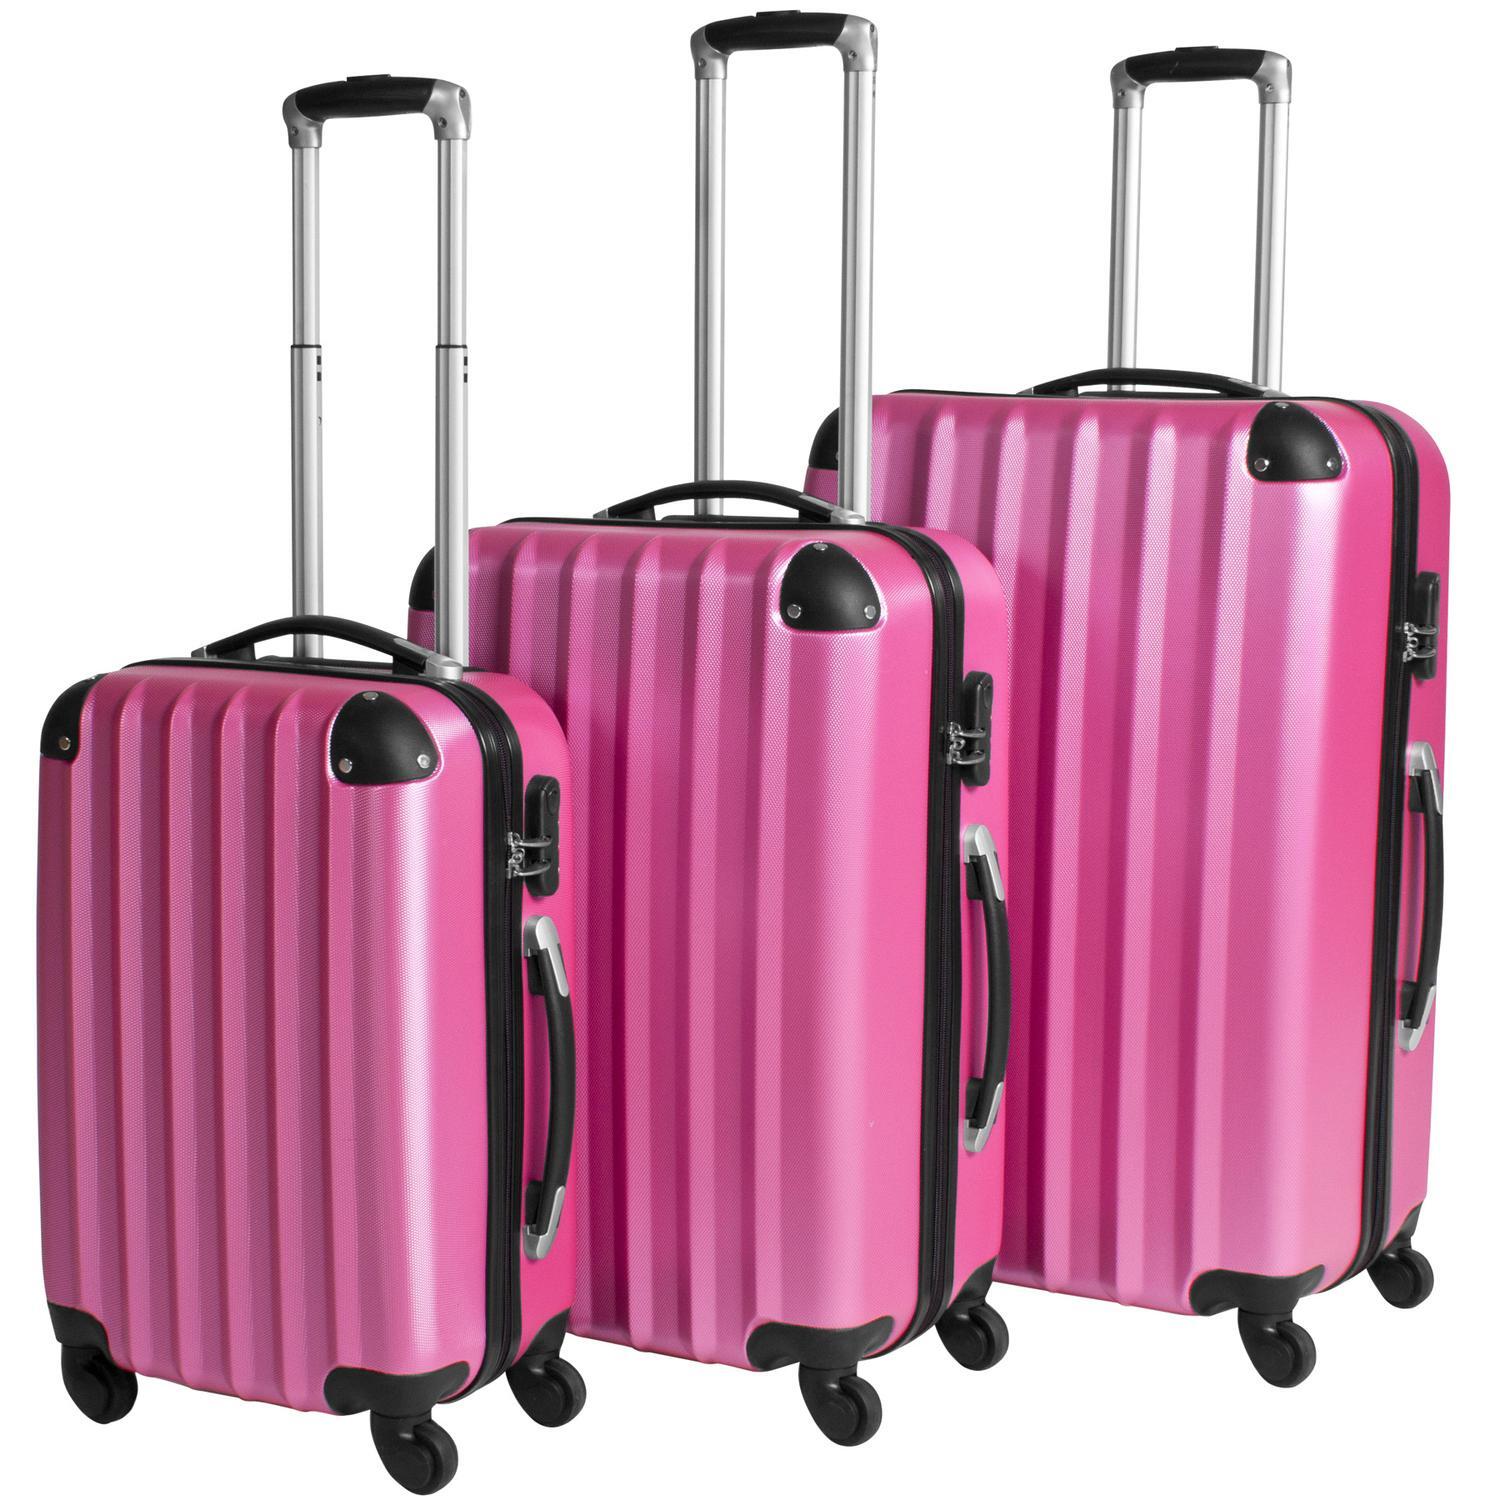 Fyrretræ hypotese Snor Rejsekuffertsæt hardcase - pink | Elgiganten